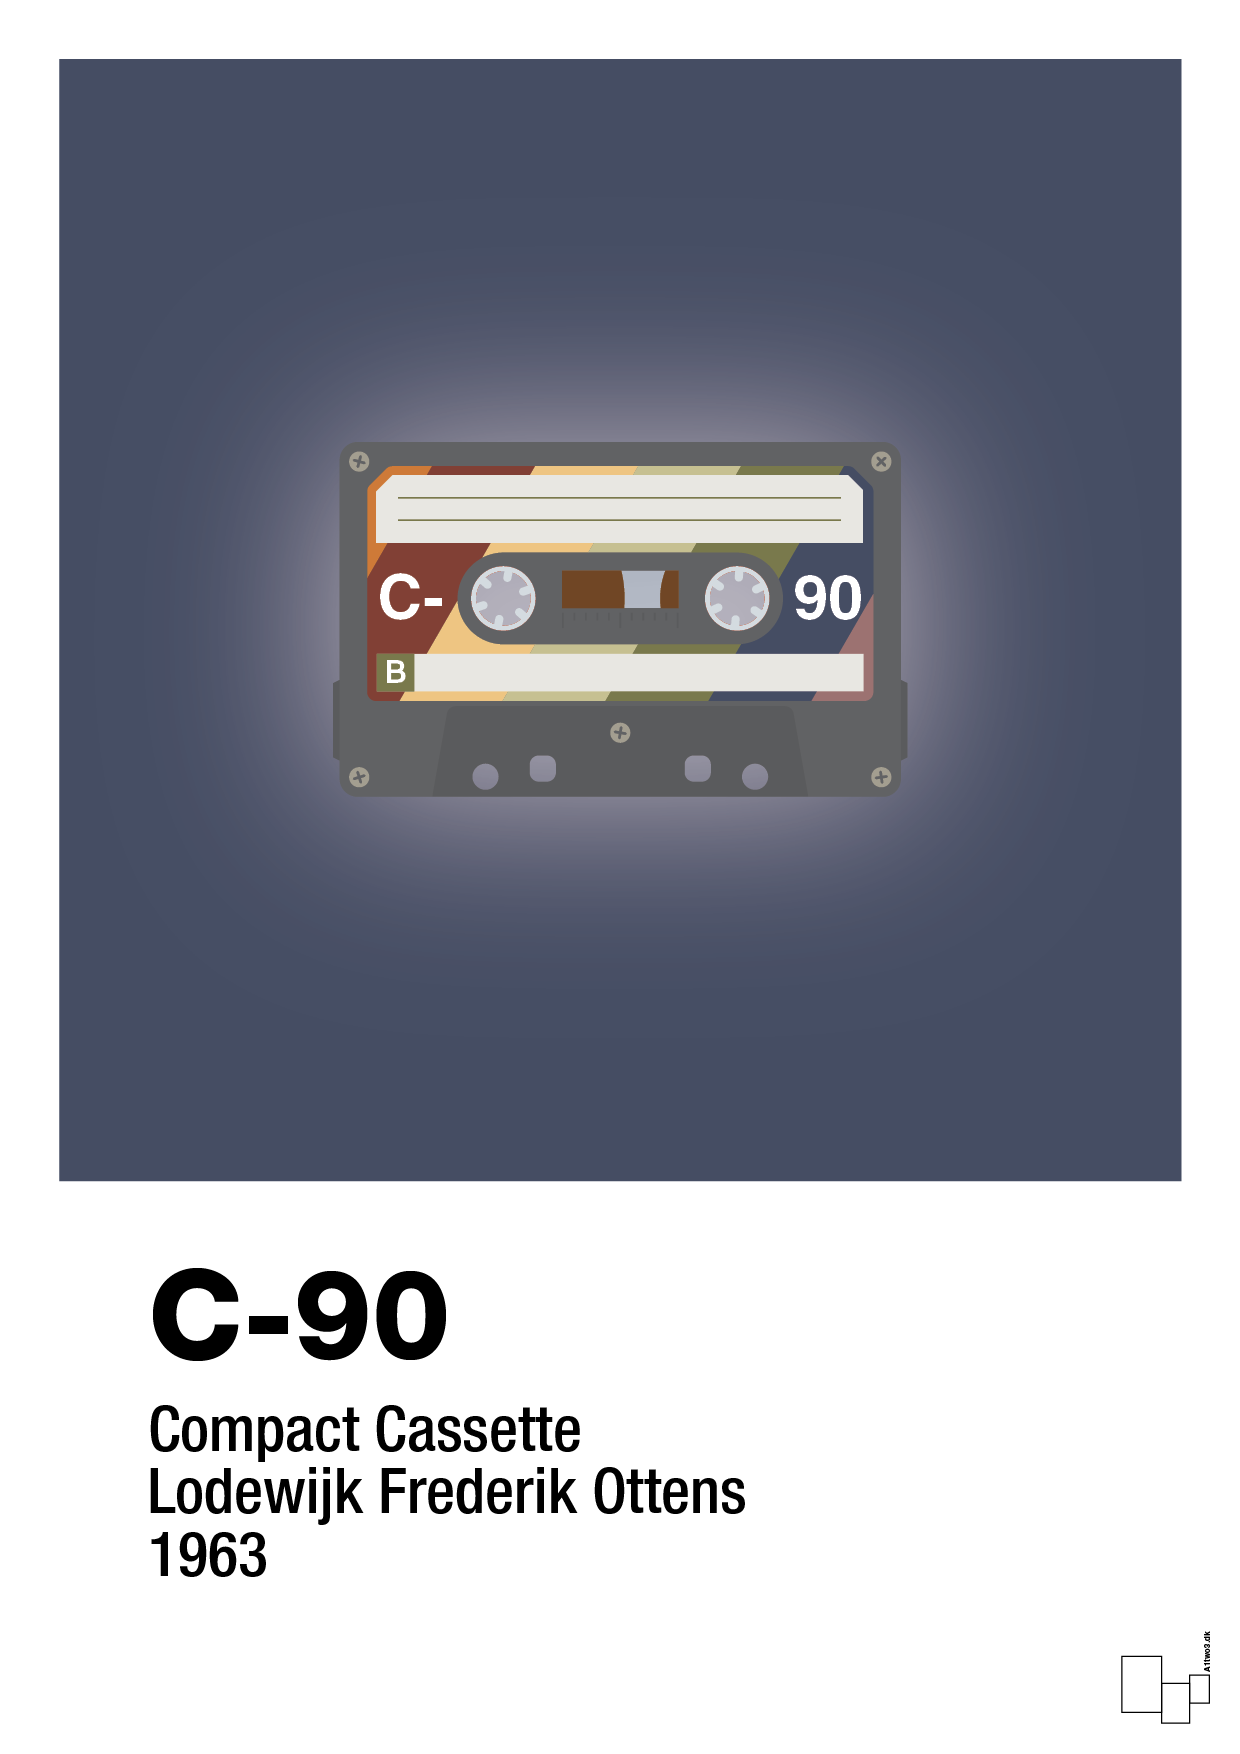 kassettebånd c-90 - Plakat med Grafik i Petrol